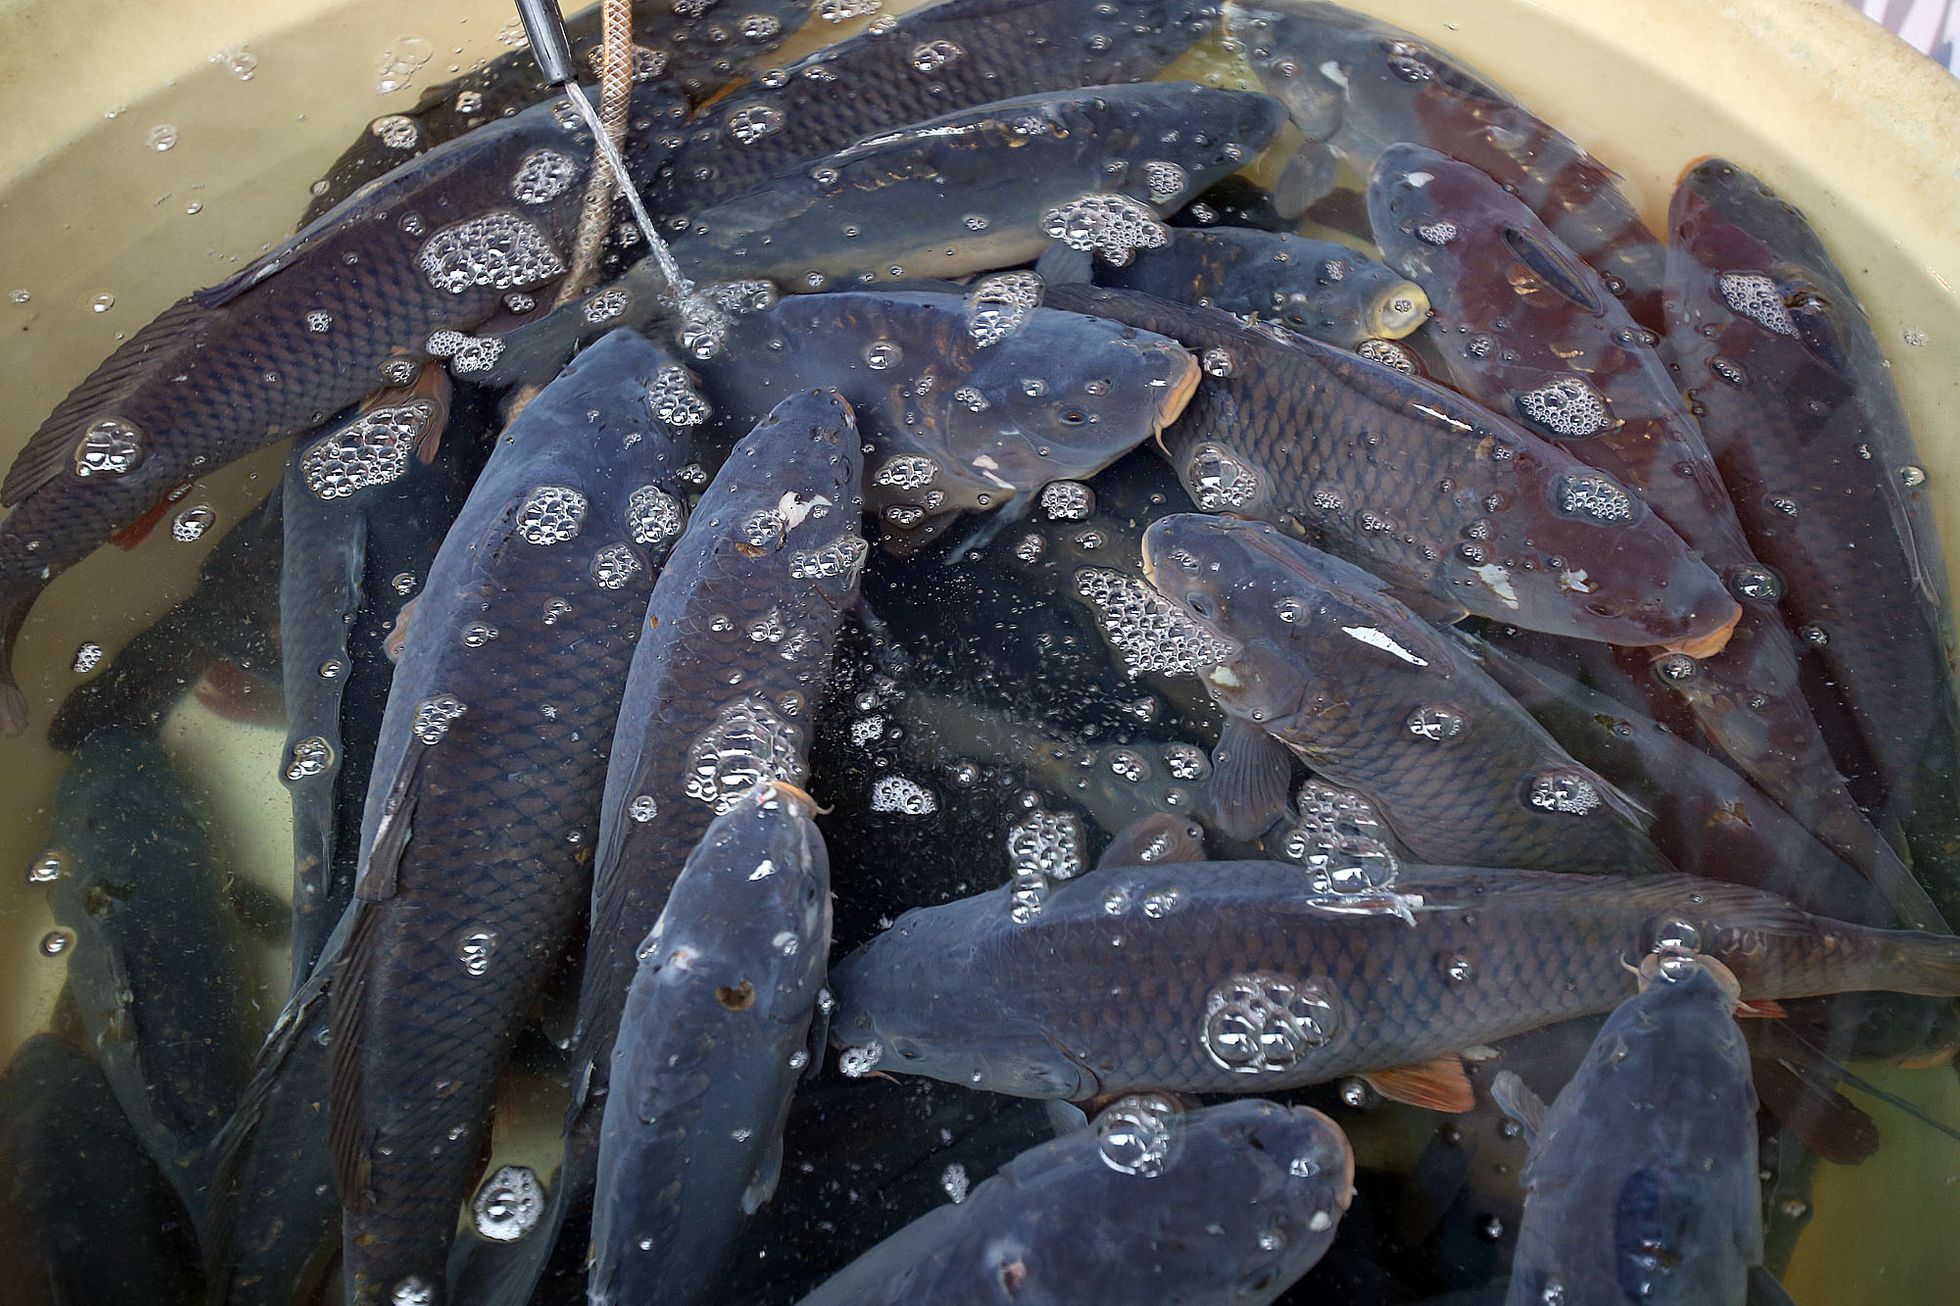 Die grausame Tradition von Goldfischen in Kübeln geht langsam zurück.  Endlich